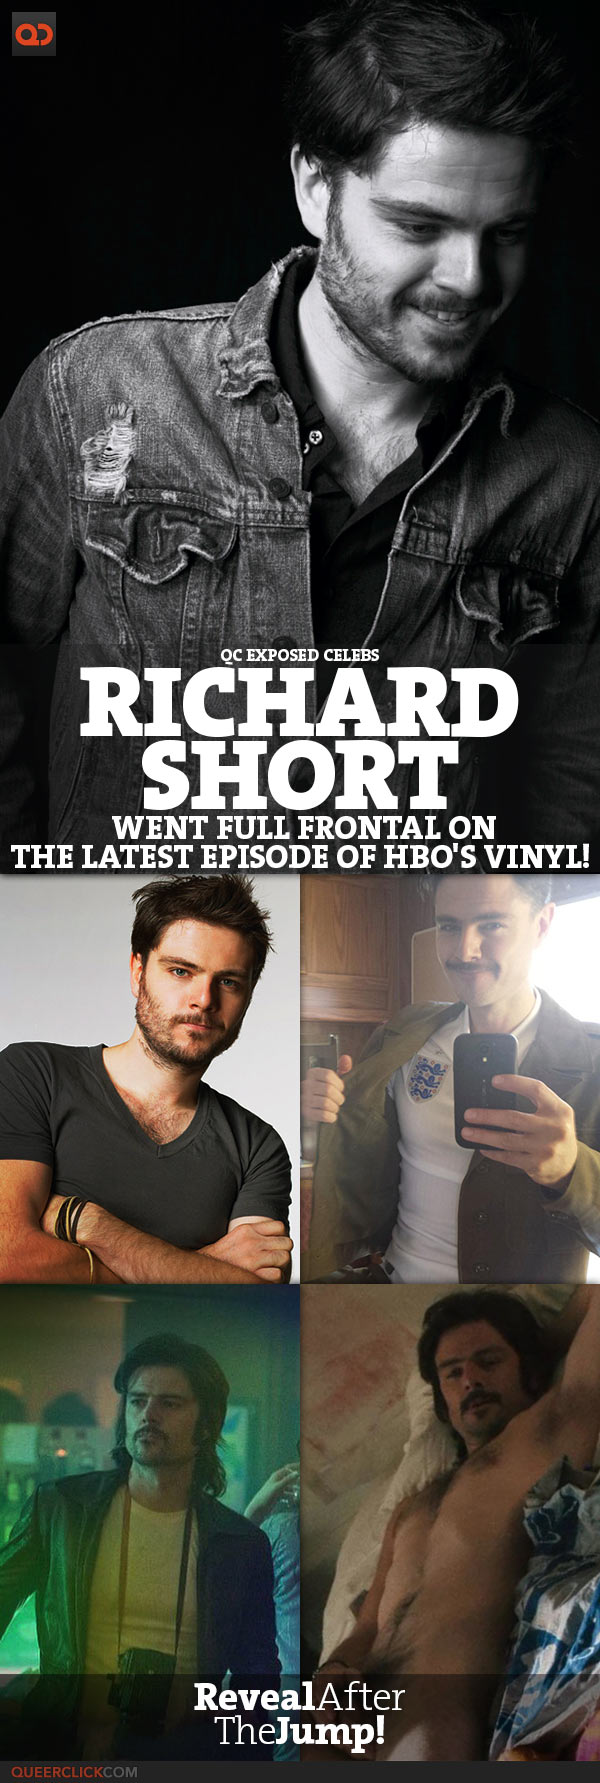 qc-actor_richard_short_full_frontal_on_hbo_vinyl-teaser